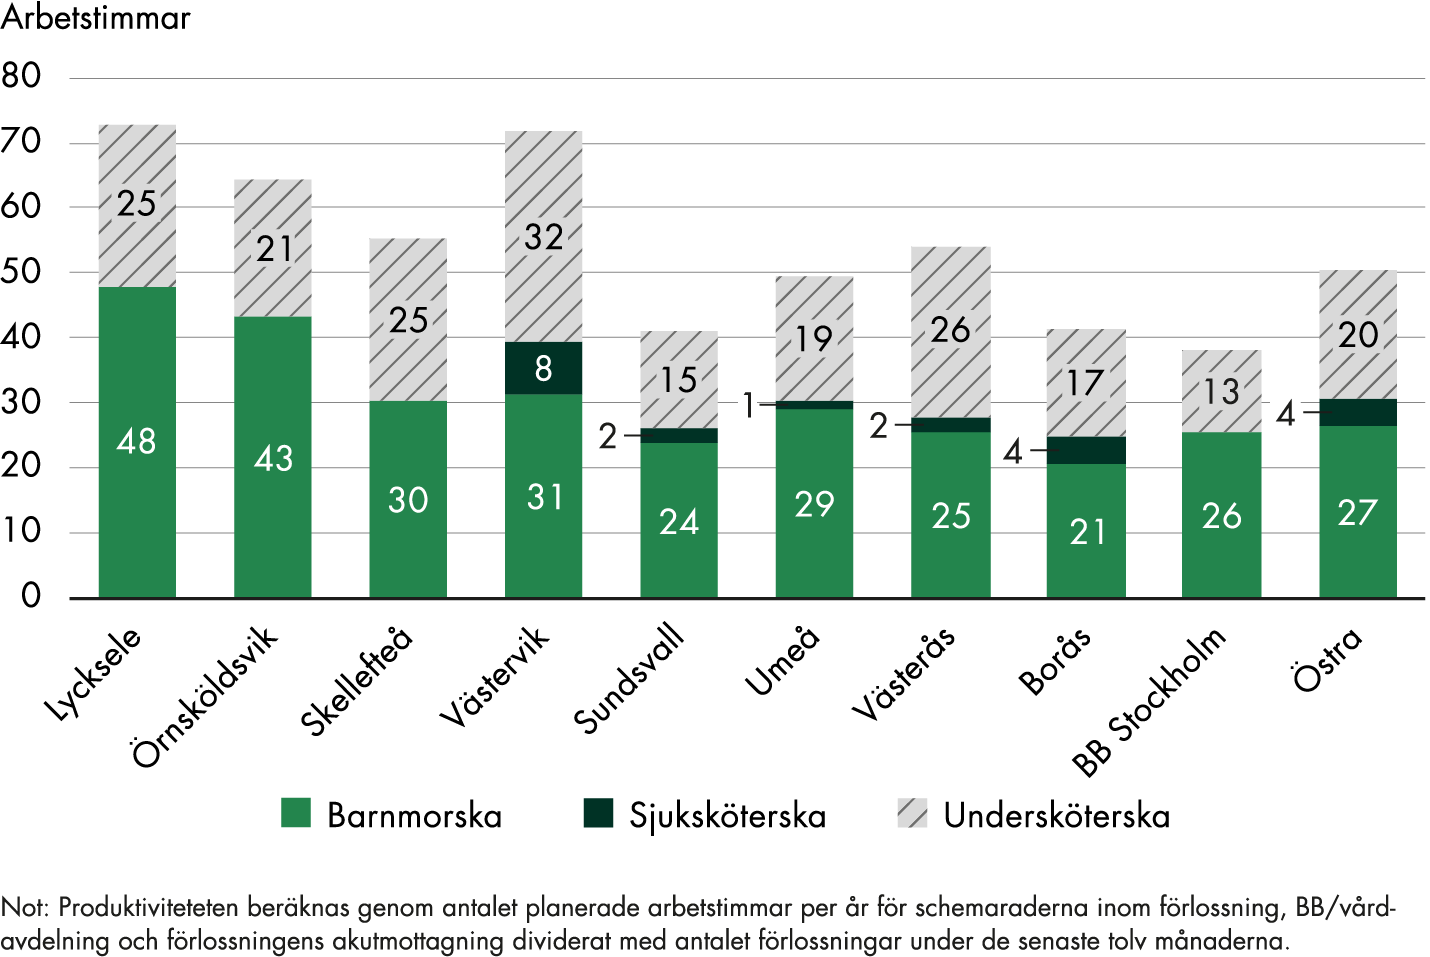 Lycksele, Västervik och Örnsköldsvik har 73, 72 respektive 64 arbetstimmar per förlossning. Skellefteå, Umeå, Västerås och Östra sjukhuset har ca 50-55 arbetstimmar per förlossning. Sundsvall, Borås och BB Stockholm har ca 40 arbetstimmar per förlossning. I Västervik utgörs 8 arbetstimmar per förlossning av sjuksköterska till skillnad från på övriga kliniker där sjuksköterskan utgör färre timmar eller inga alls.